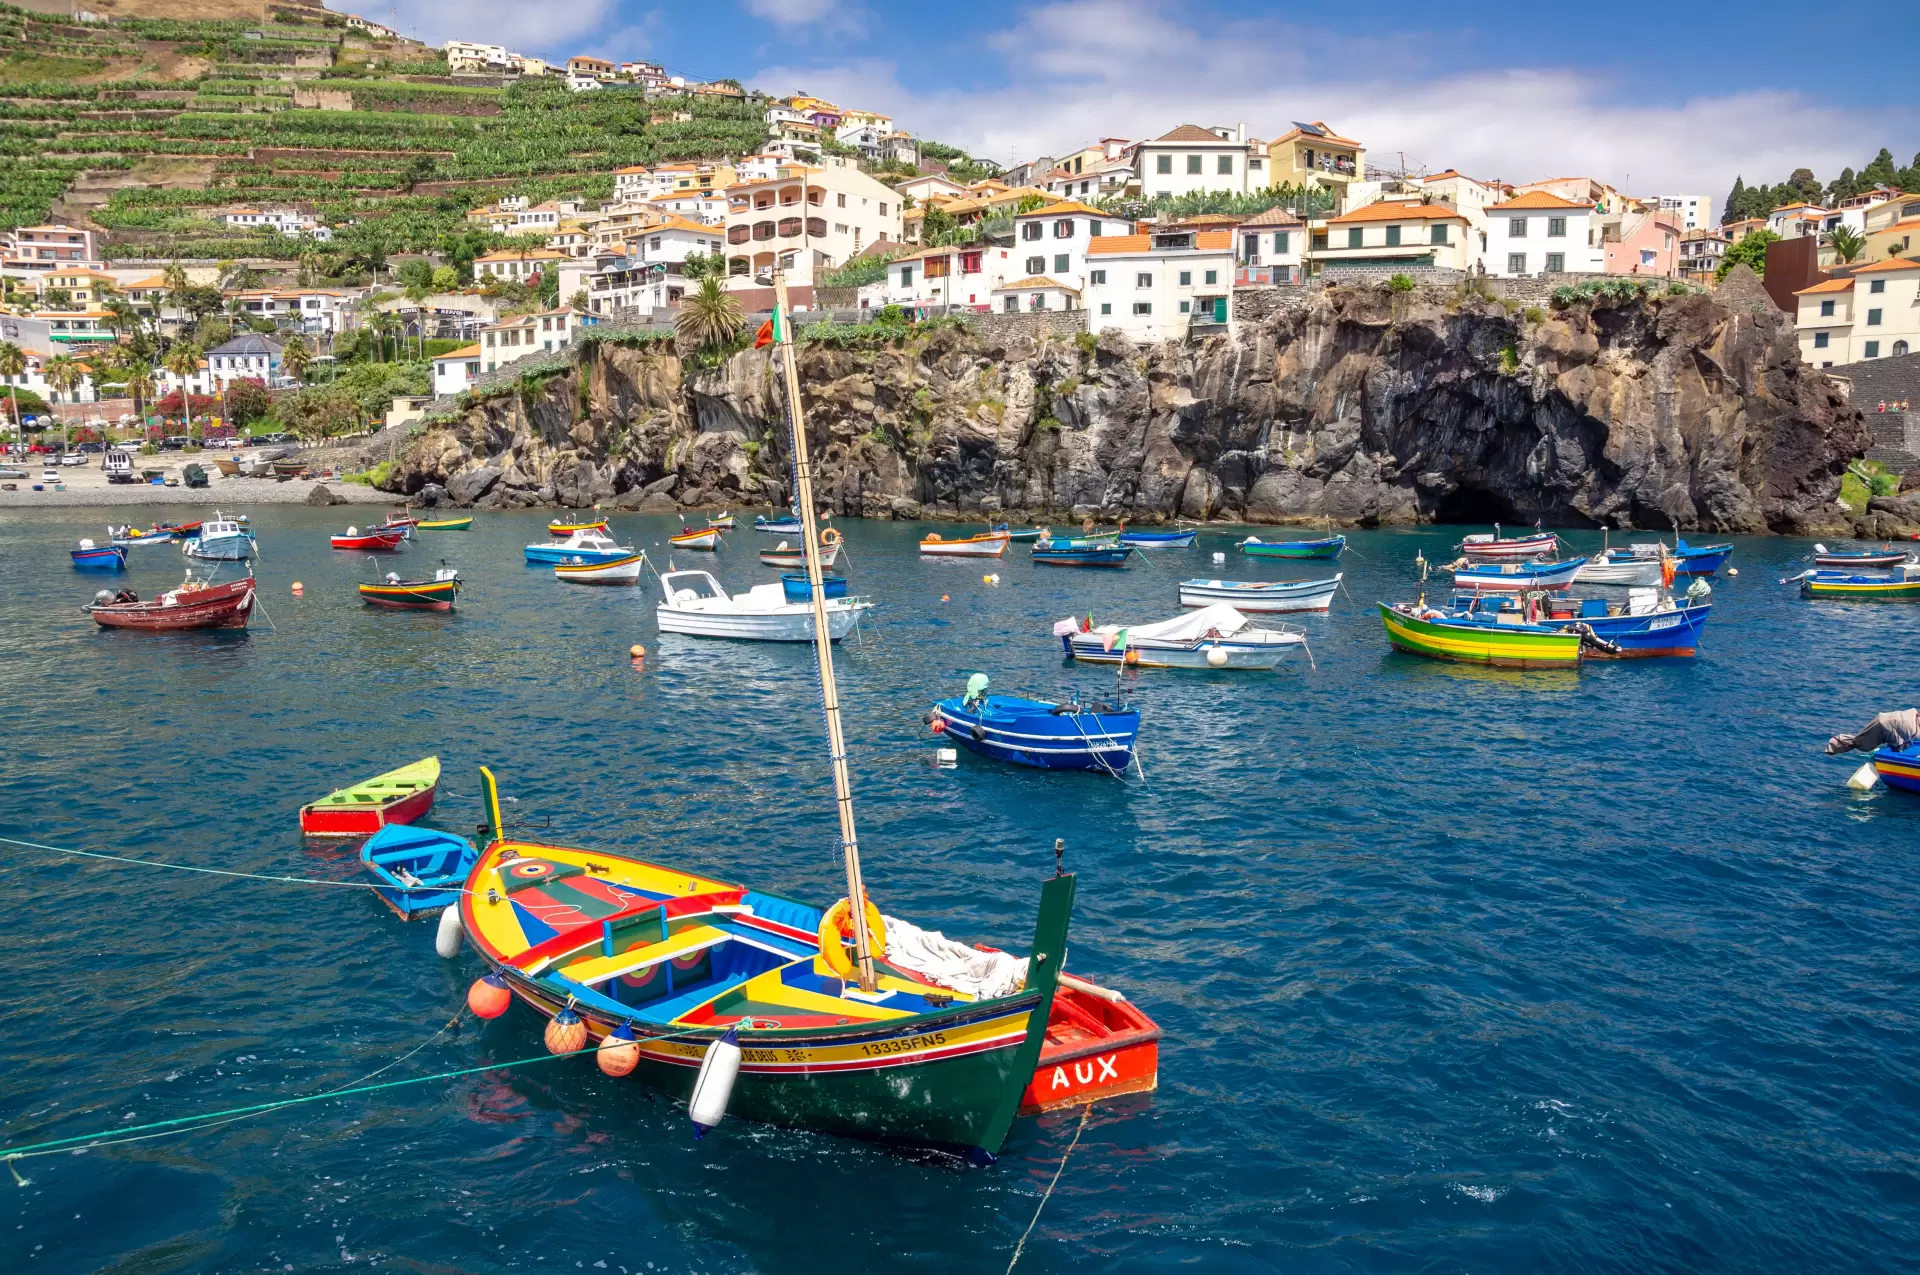 Insula Madeira și Insulele Azore